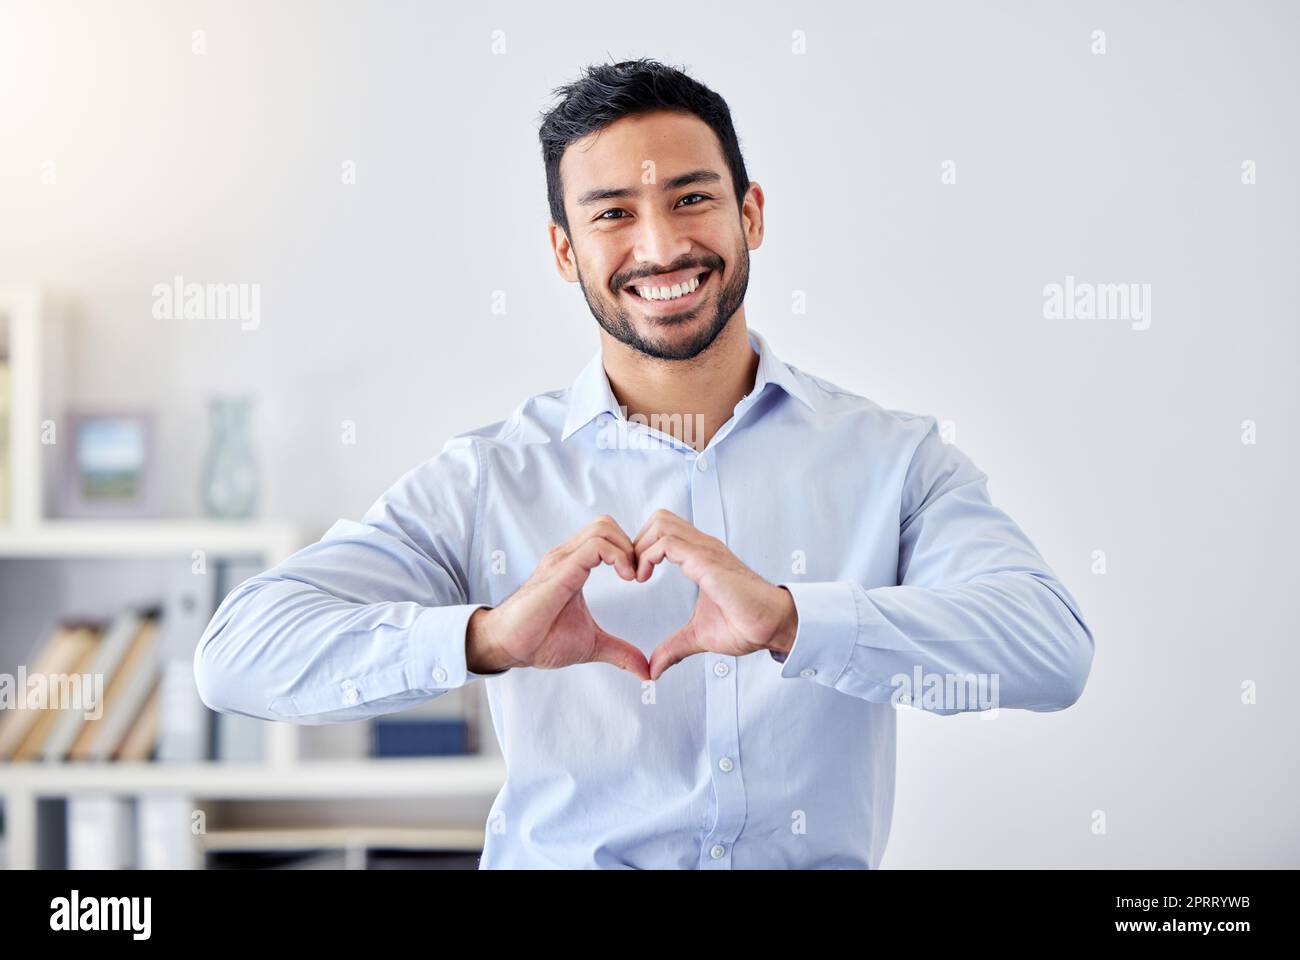 Asiatischer Geschäftsmann, Herzzeichen- und Handgesten-Emoji für Unterstützung, Vertrauen und Leidenschaft für Erfolg. Porträt eines Lächelns, glücklichen oder motivierenden Mitarbeiters für wohltätige Zwecke, Gemeindeliebe oder Hilfe für Mitarbeiter im Amt Stockfoto